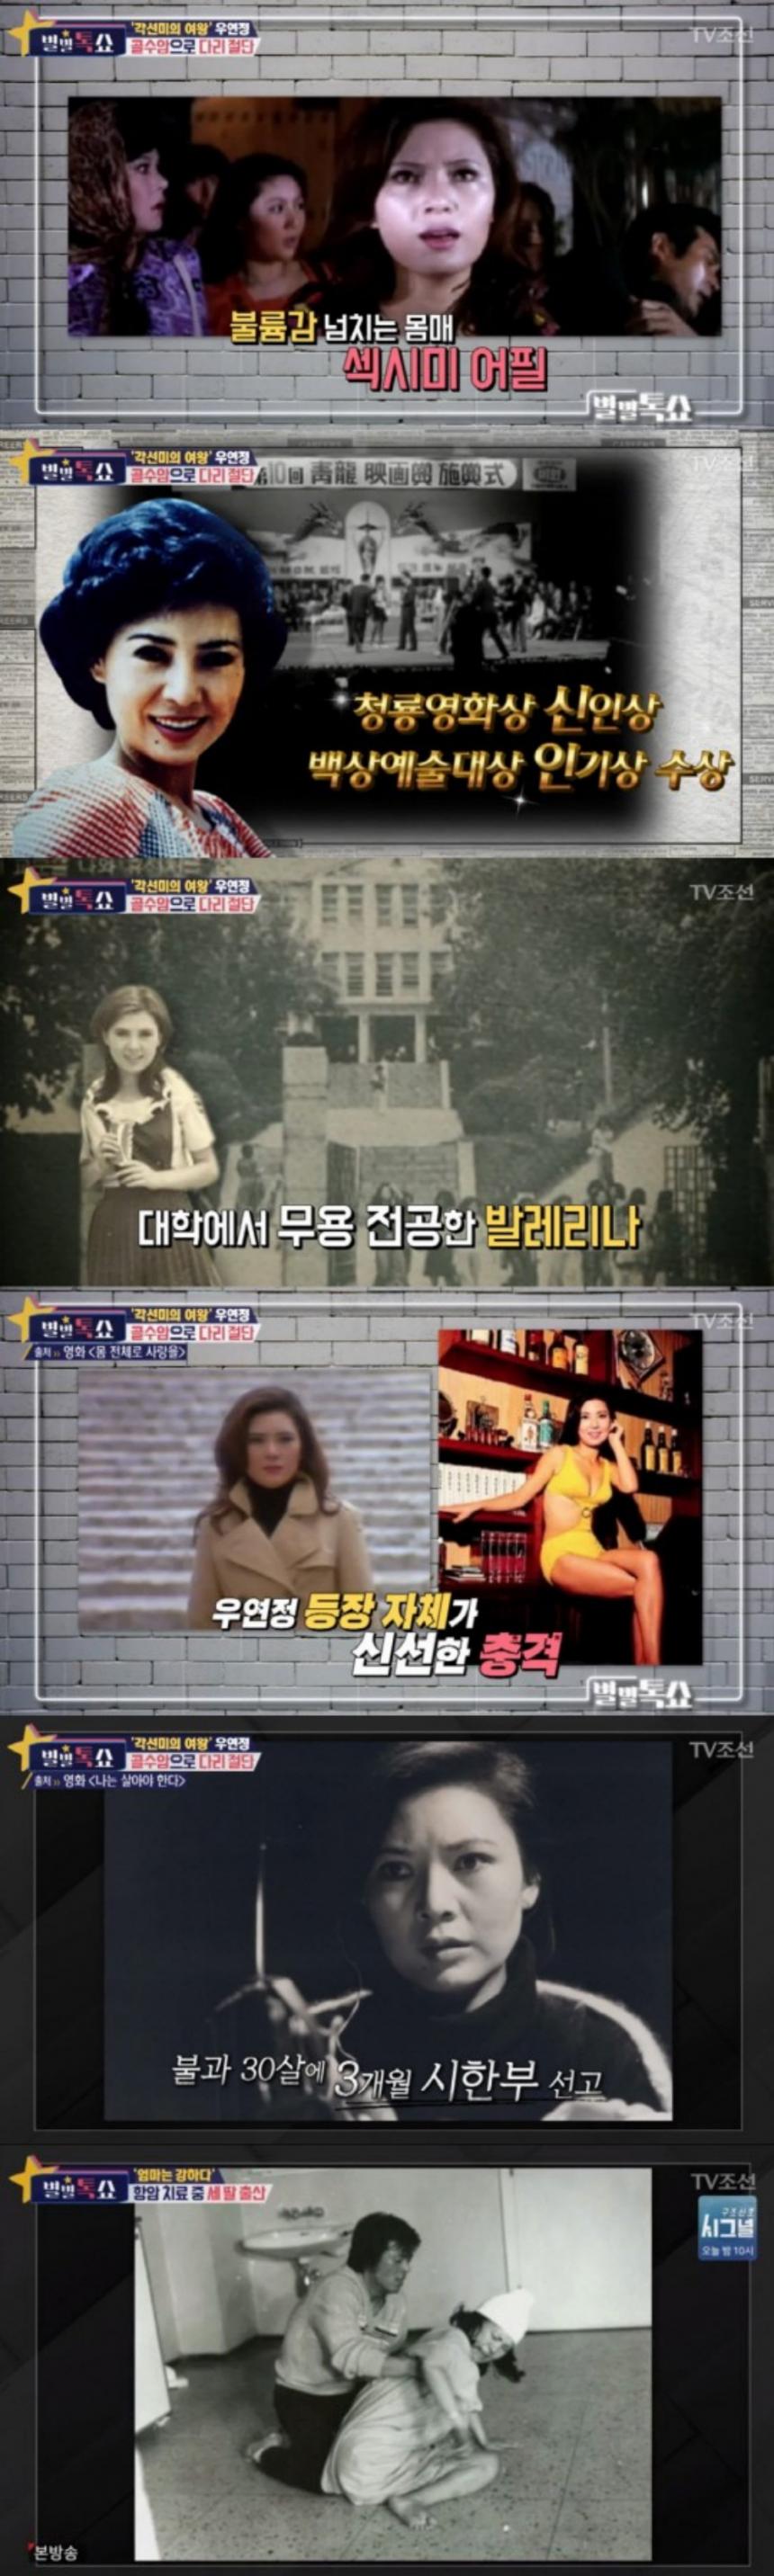 우연정 / TV조선 ‘별별톡쇼’ 방송 캡처